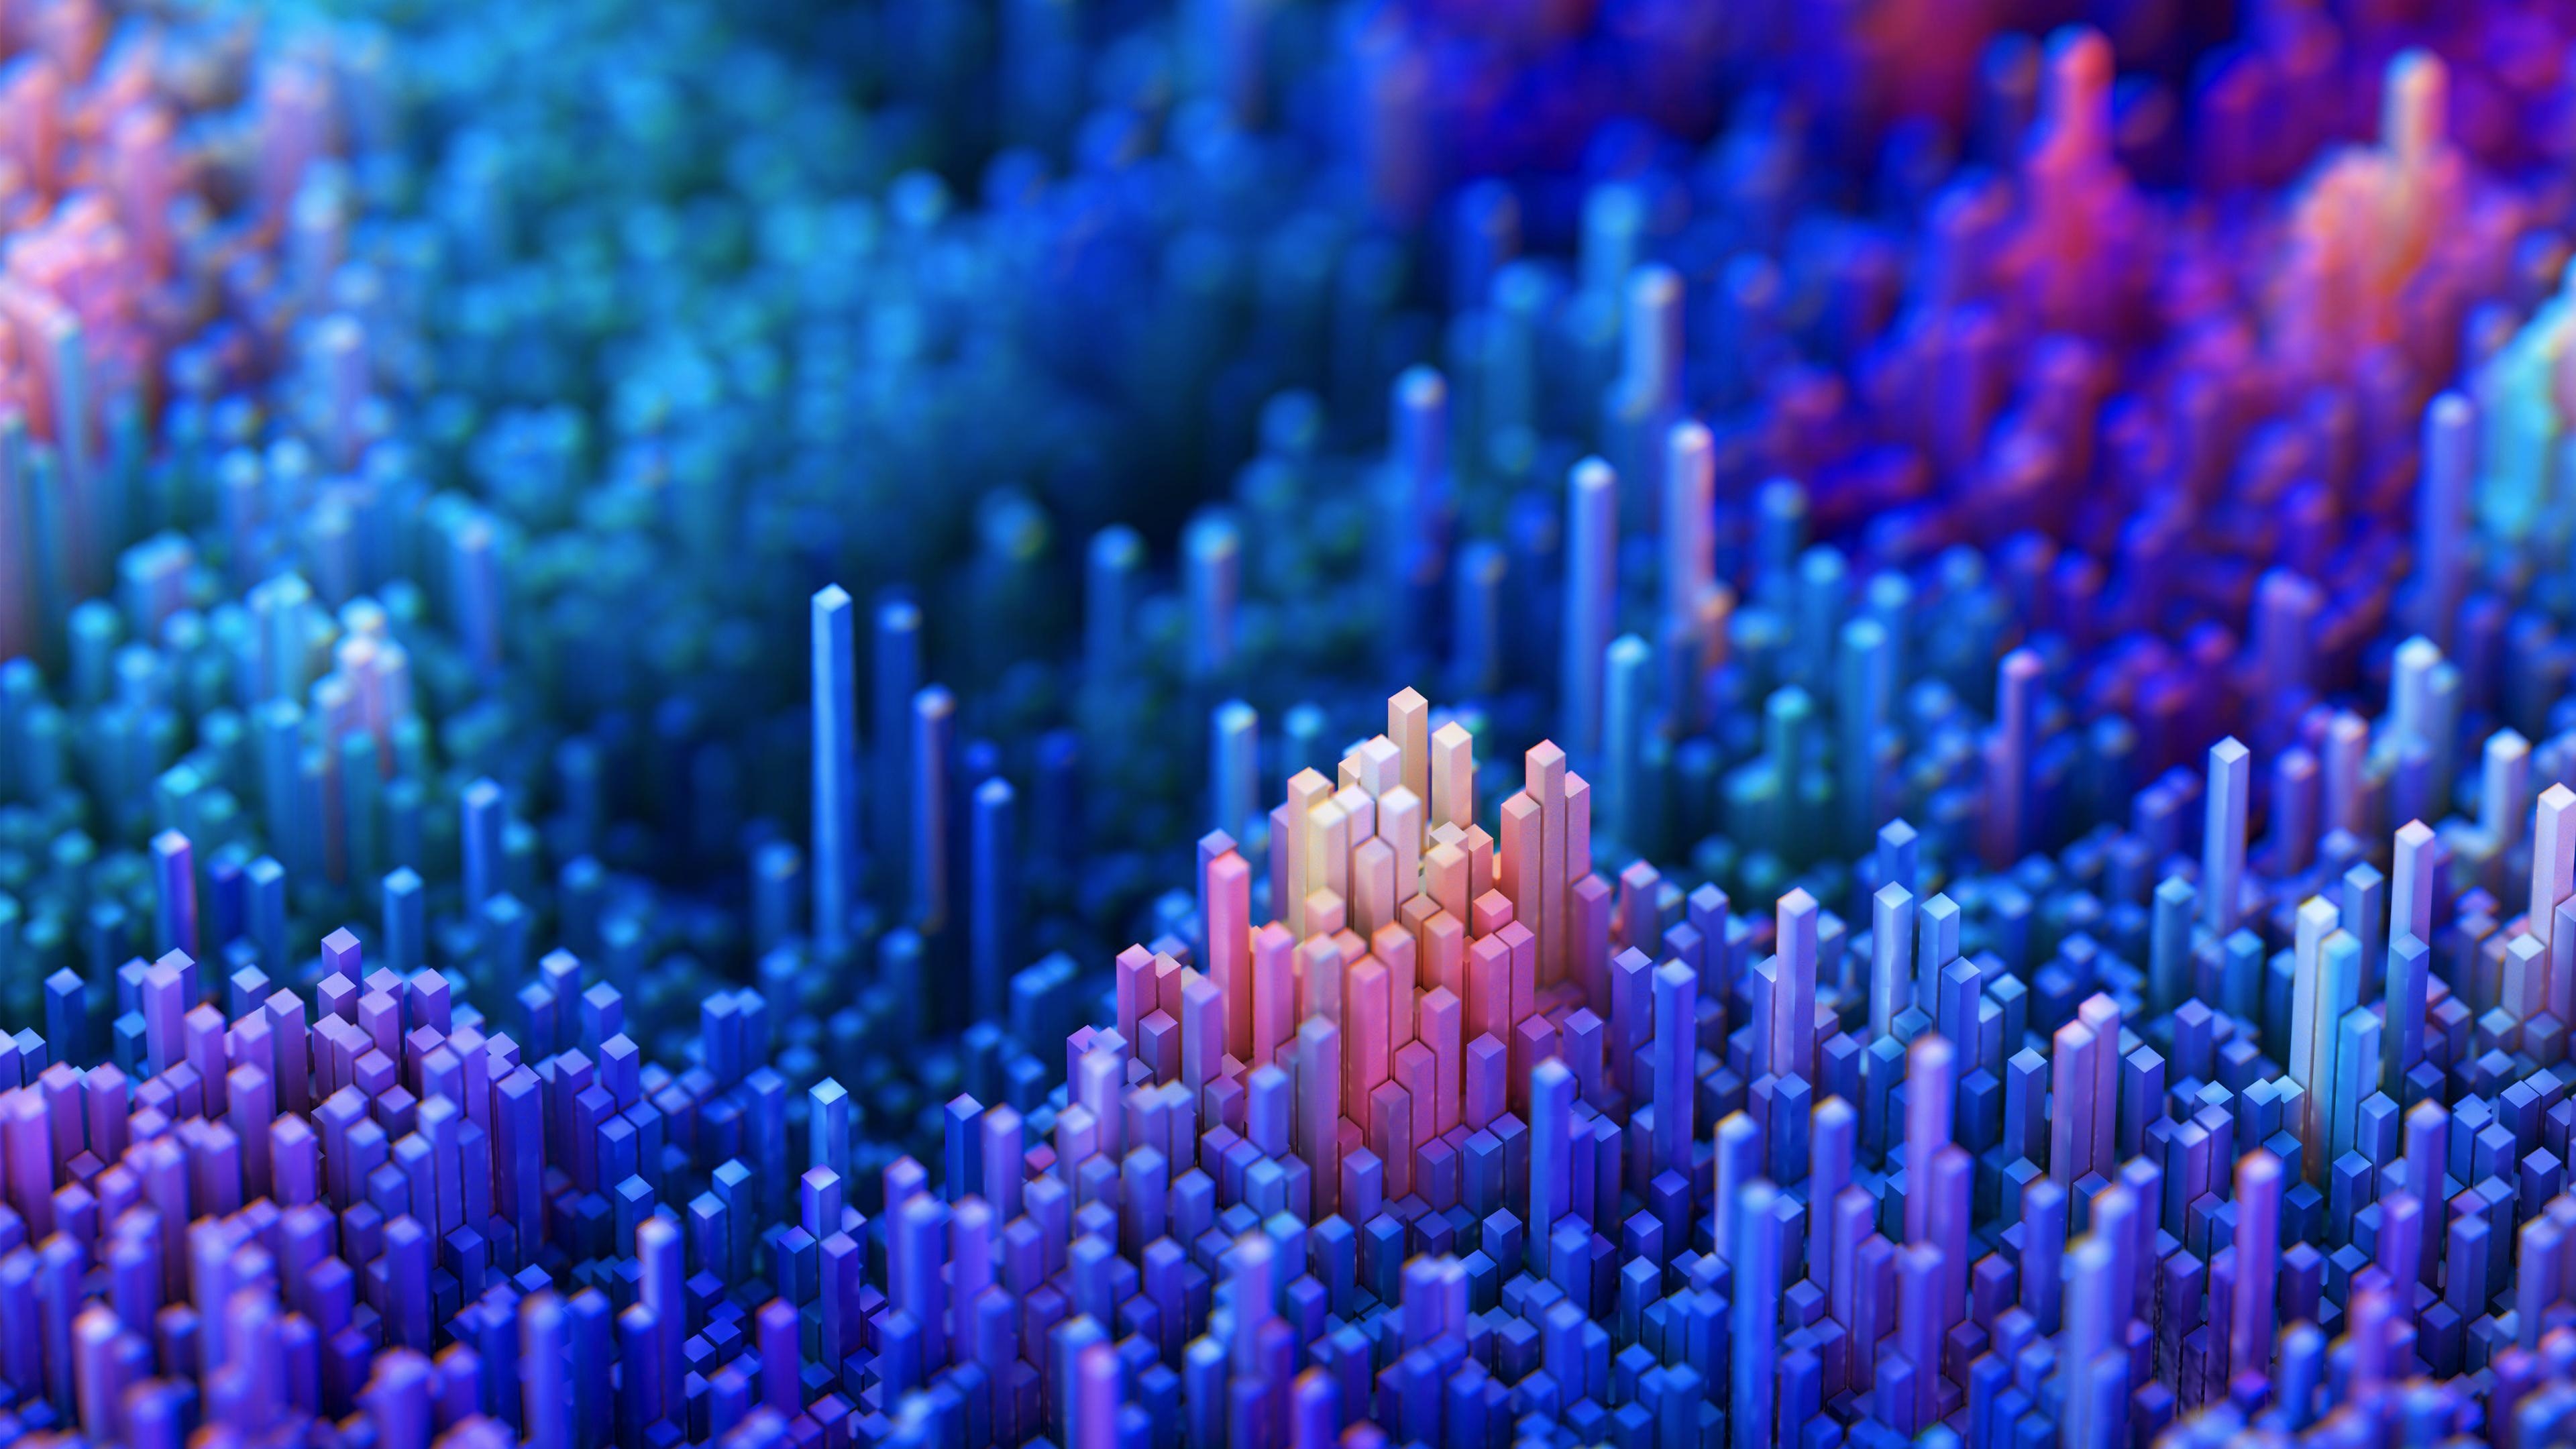 عکس سه بعدی زیبا با رنگ های رویایی ویژه محیط ویندوز 11